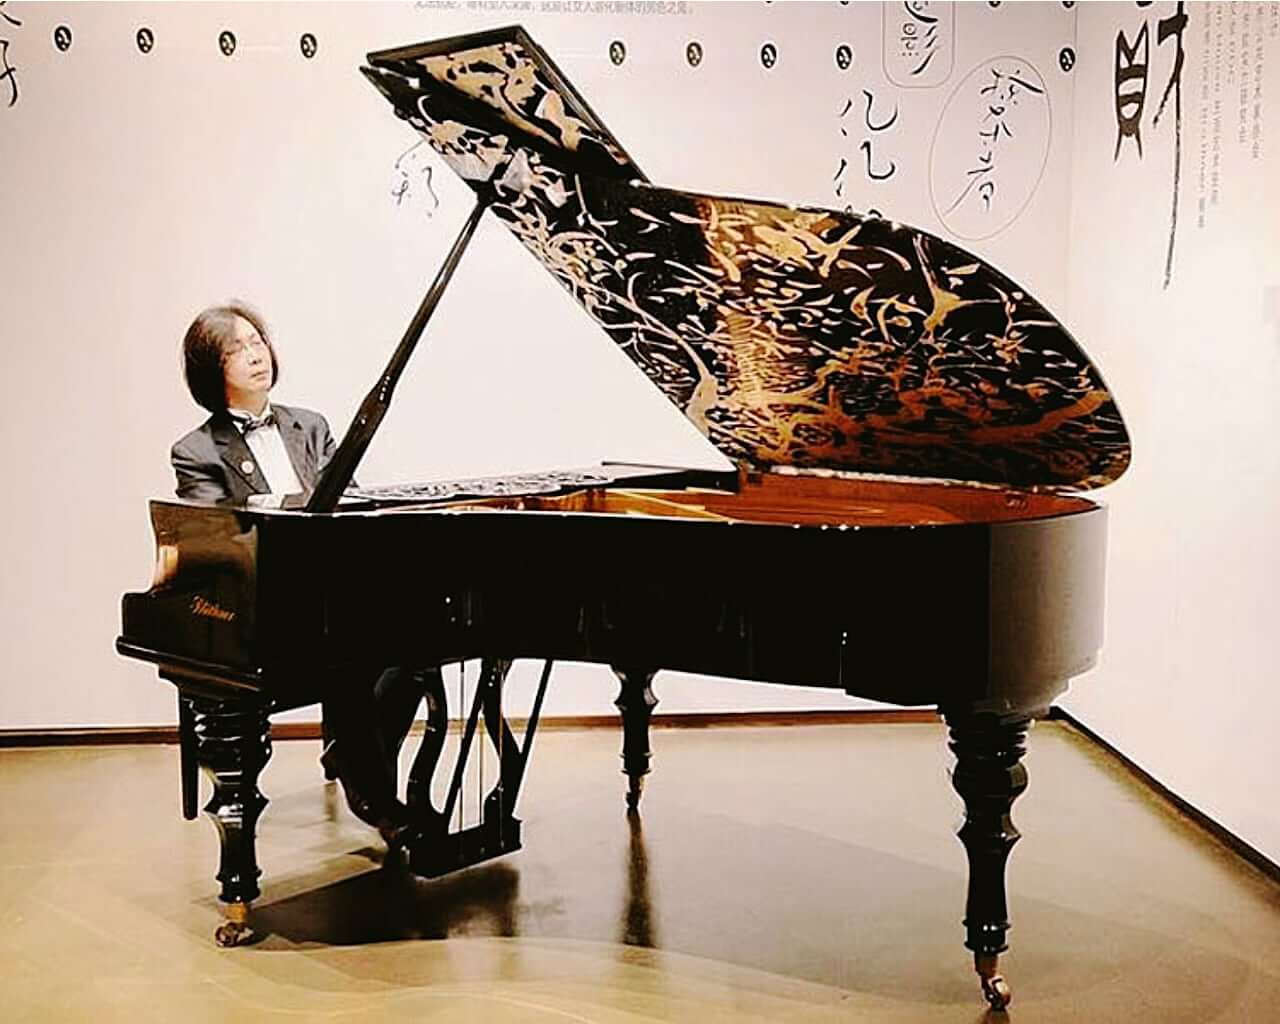 Hình nền Nền Hình ảnh Là Một Cây đàn Piano Kỹ Thuật Số Ngồi Dưới ánh Sáng  Màu Tím Và Xanh Lam Nền Kết Xuất 3d Bàn Phím điện Với Hình Dạng